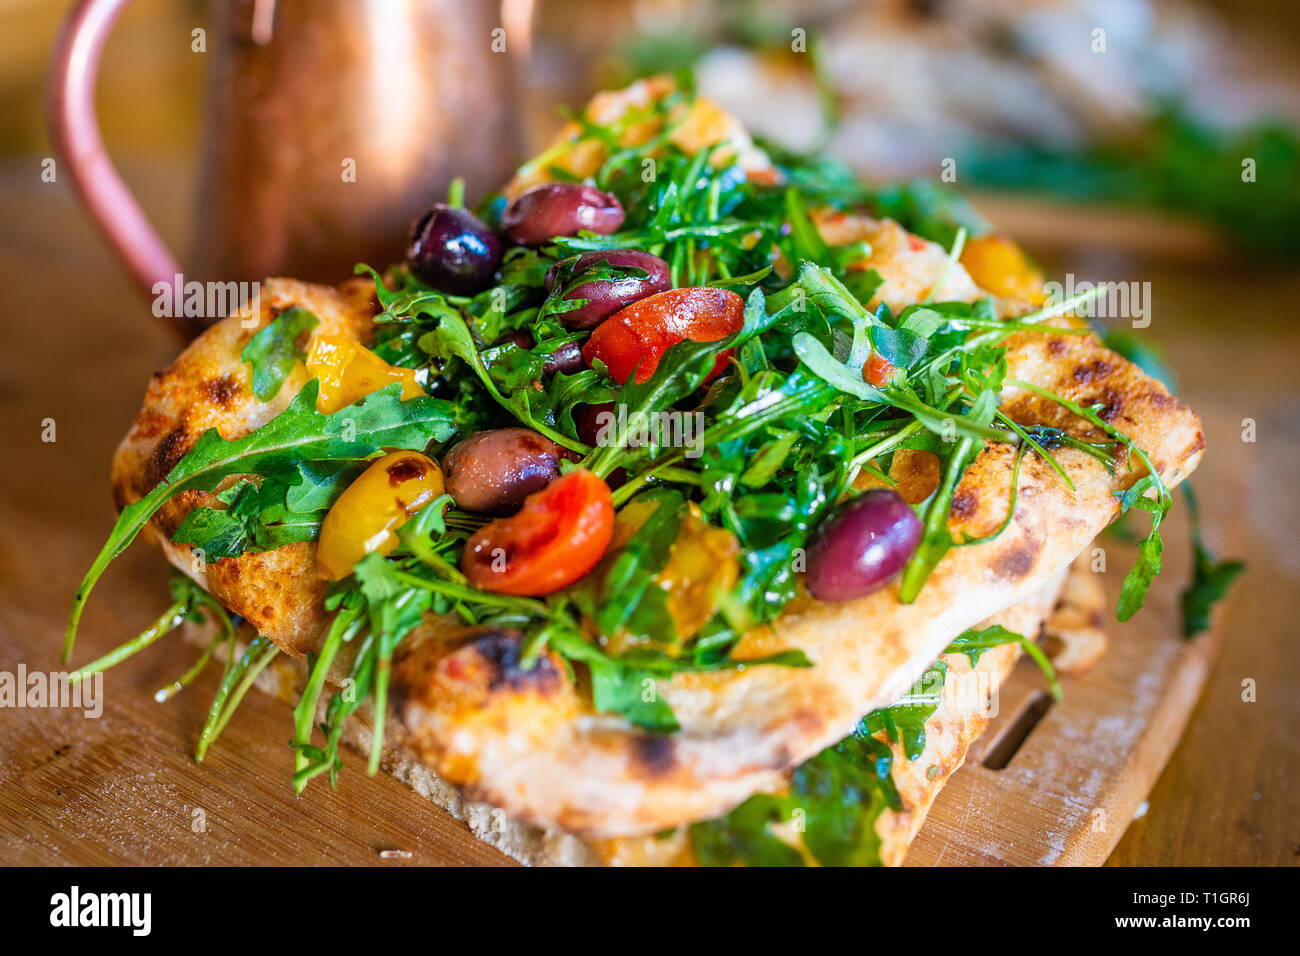 Authentische italienische römischen Stil vegane pizza Slices auf einer Holzplatte in einer Pizzeria Trattoria Restaurant. Italienisch essen. Selektiver Fokus Stockfoto